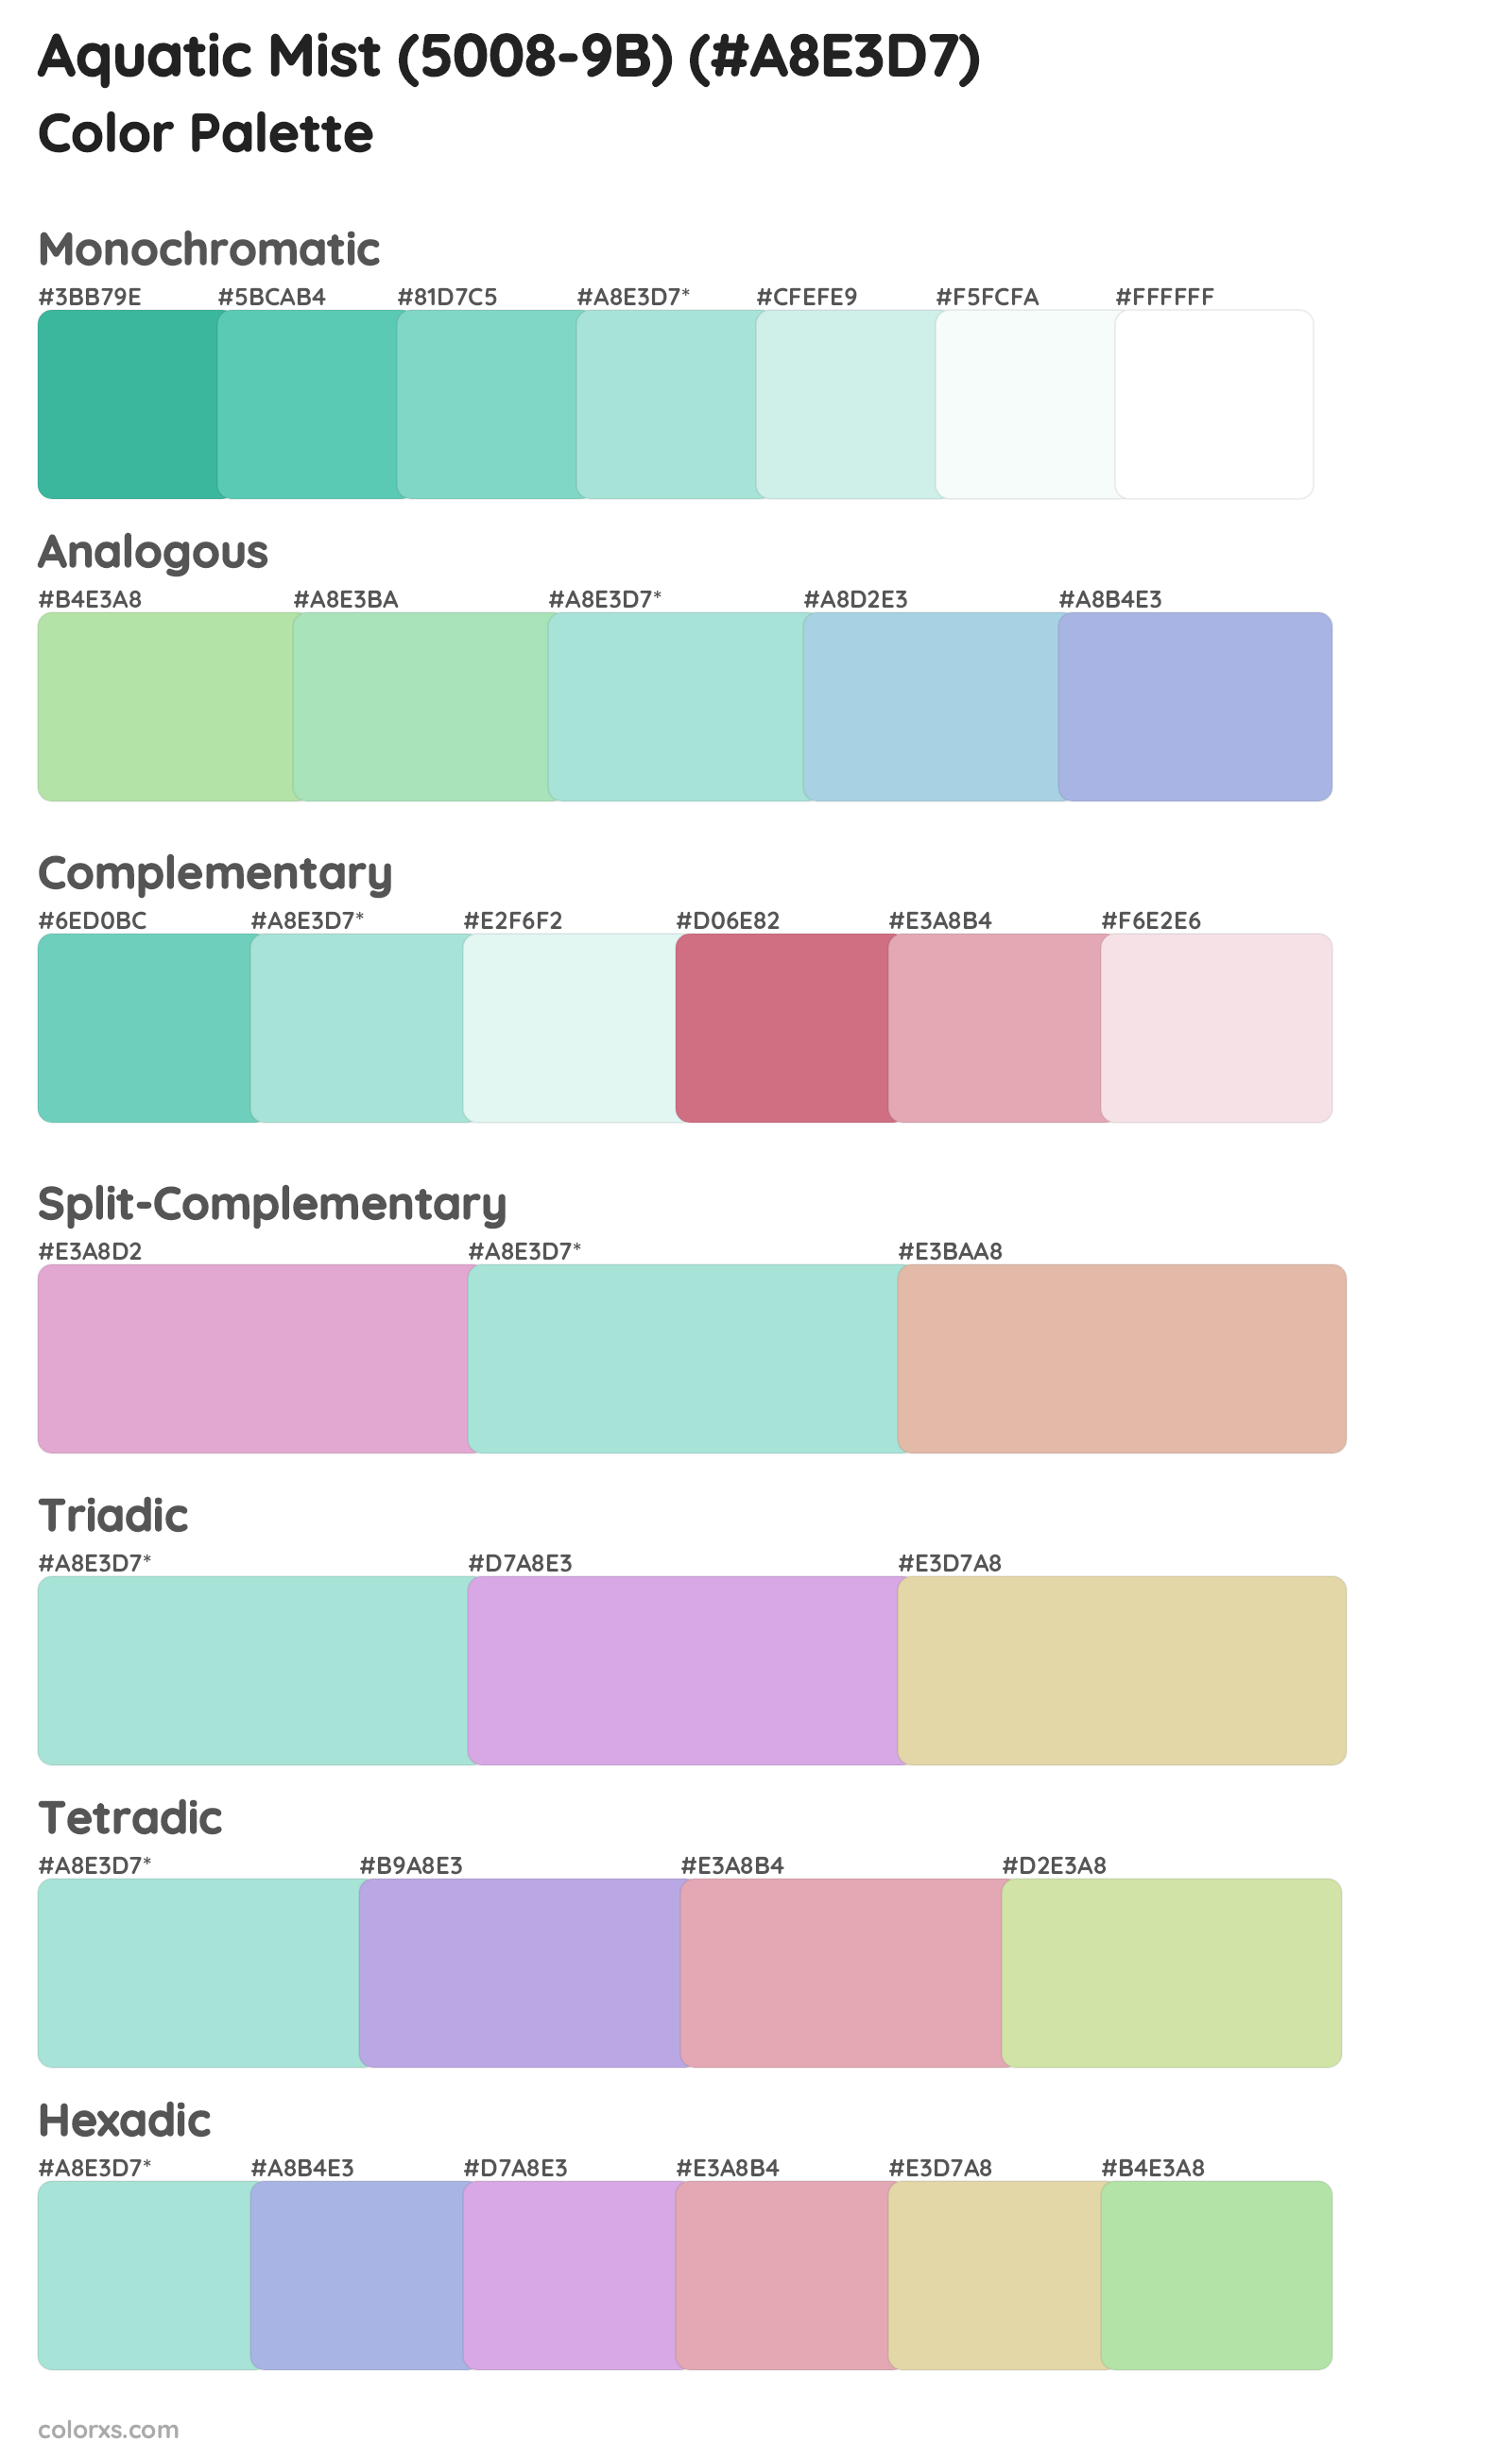 Aquatic Mist (5008-9B) Color Scheme Palettes